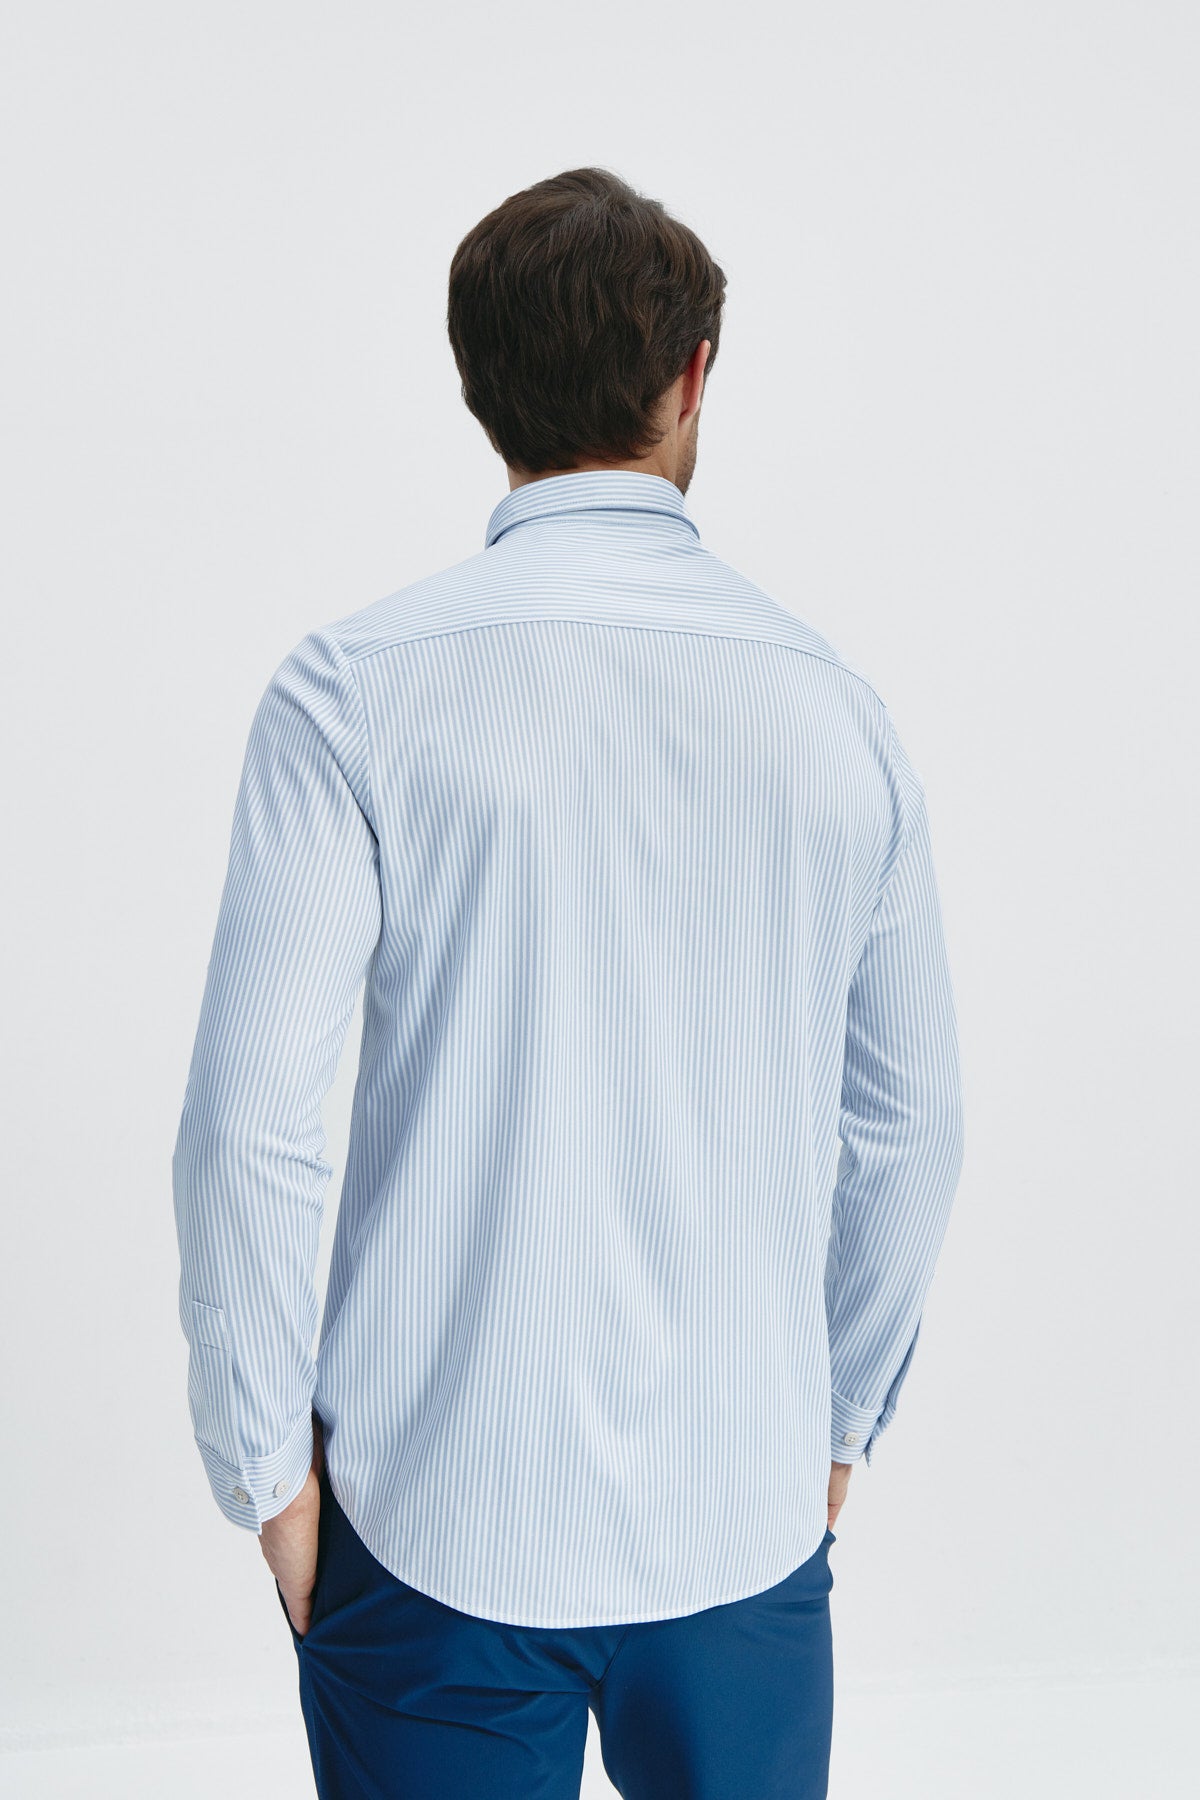 Camisa doble tono azul regular de Sepiia, estilo y comodidad en una prenda duradera. Foto de espalda.